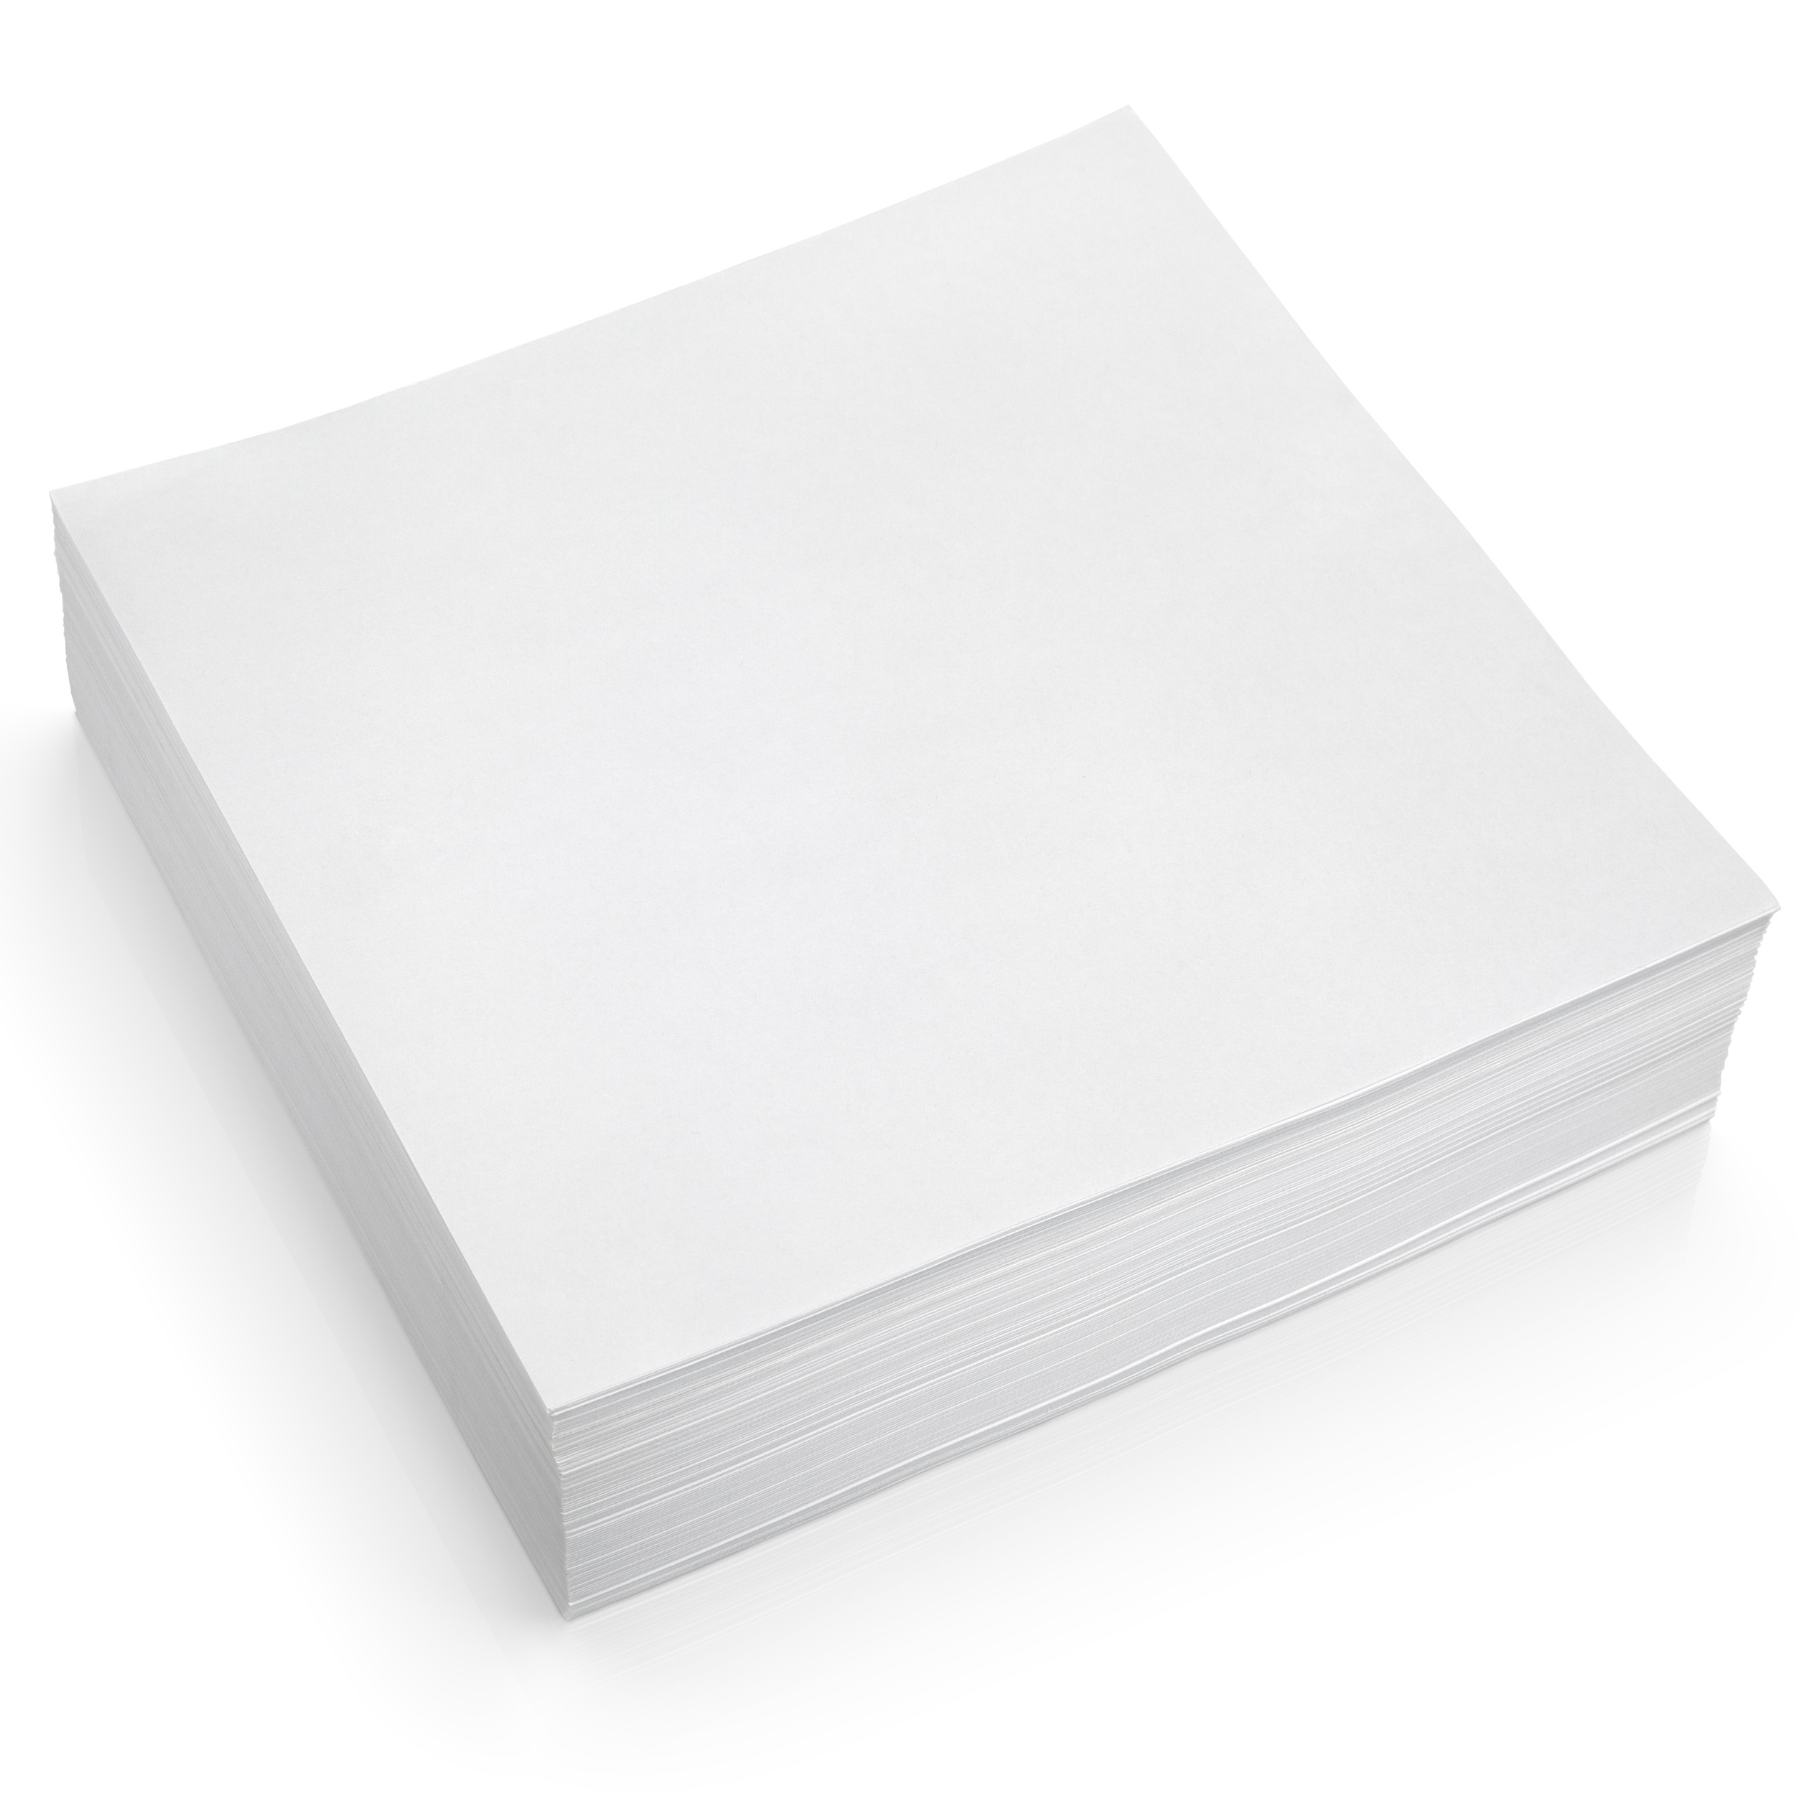 Precut Butcher Paper Sheets for Sublimation & Heat Press Crafts, (X-La –